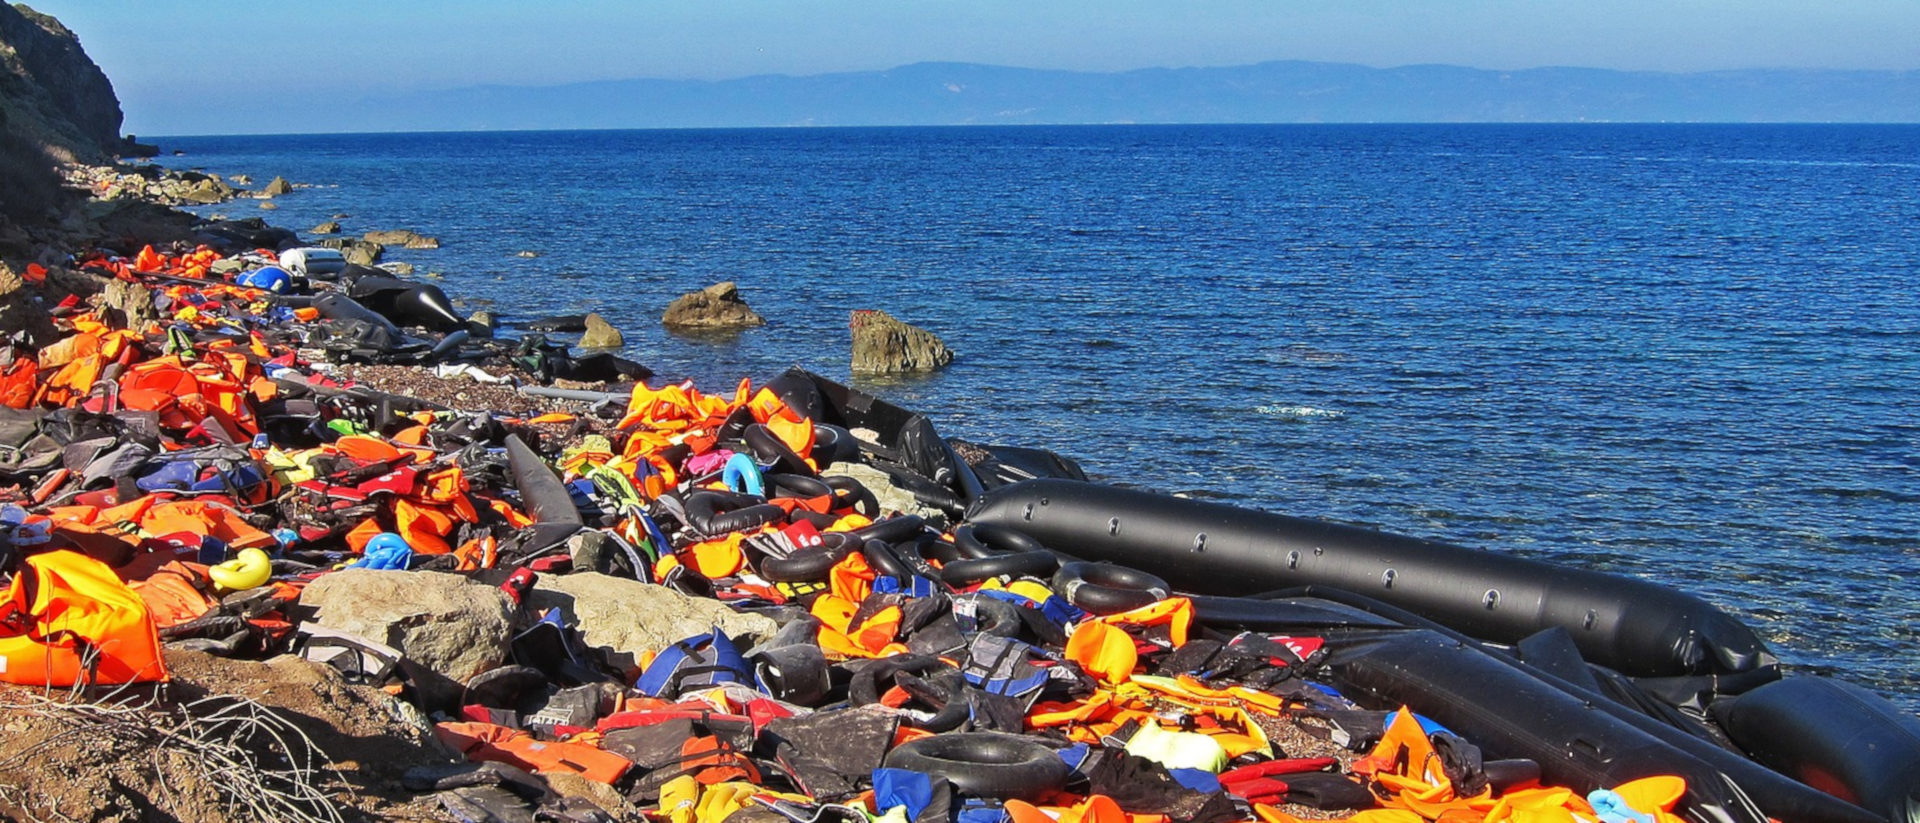 Schwimmwesten von Flüchtlingen an einem Strand in Griechenland.